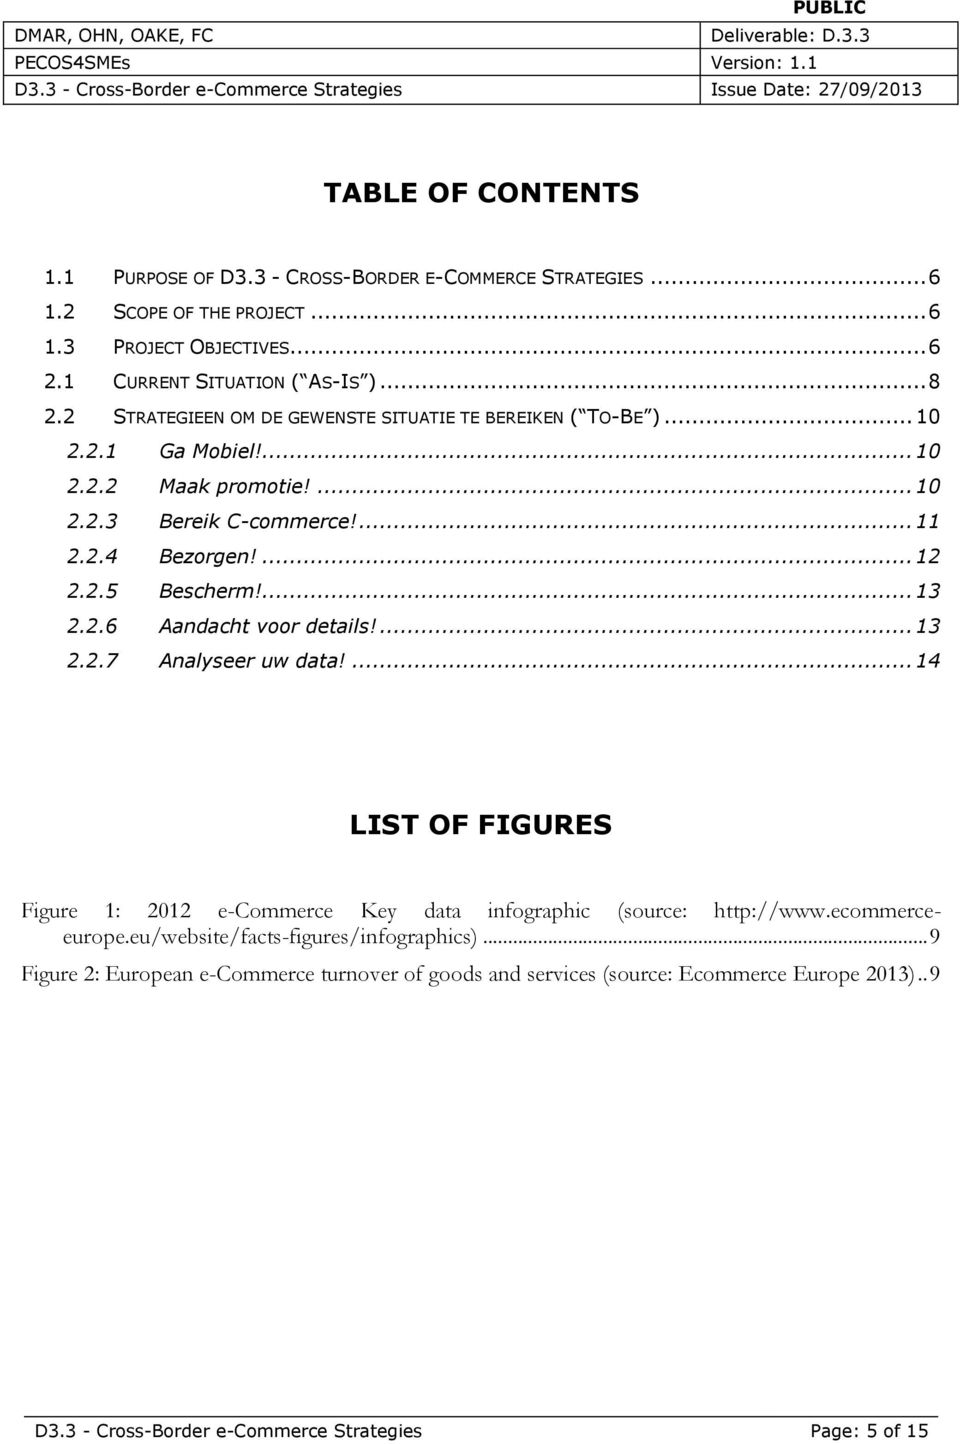 ... 13 2.2.6 Aandacht voor details!... 13 2.2.7 Analyseer uw data!... 14 LIST OF FIGURES Figure 1: 2012 e-commerce Key data infographic (source: http://www.ecommerceeurope.